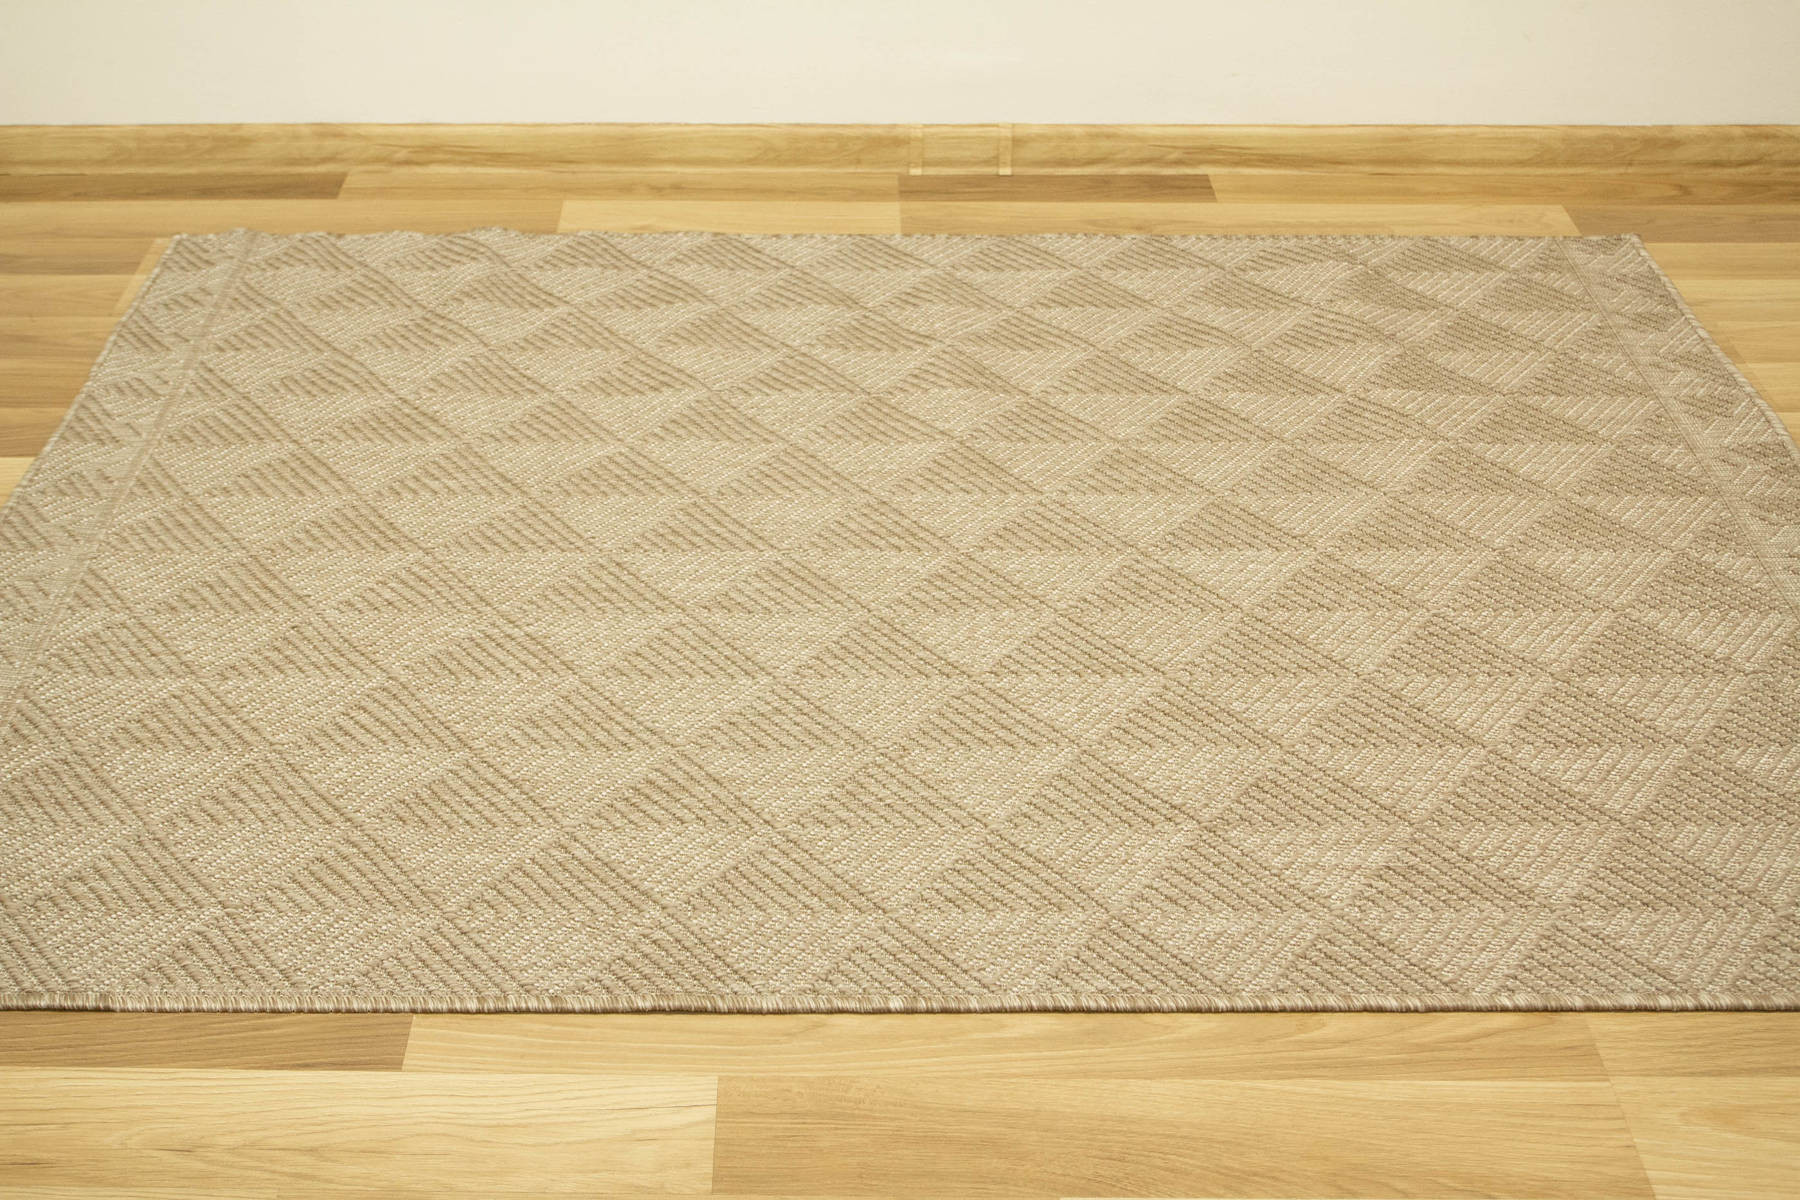 Šnúrkový obojstranný koberec Brussels 205740/10610 béžový / krémový 